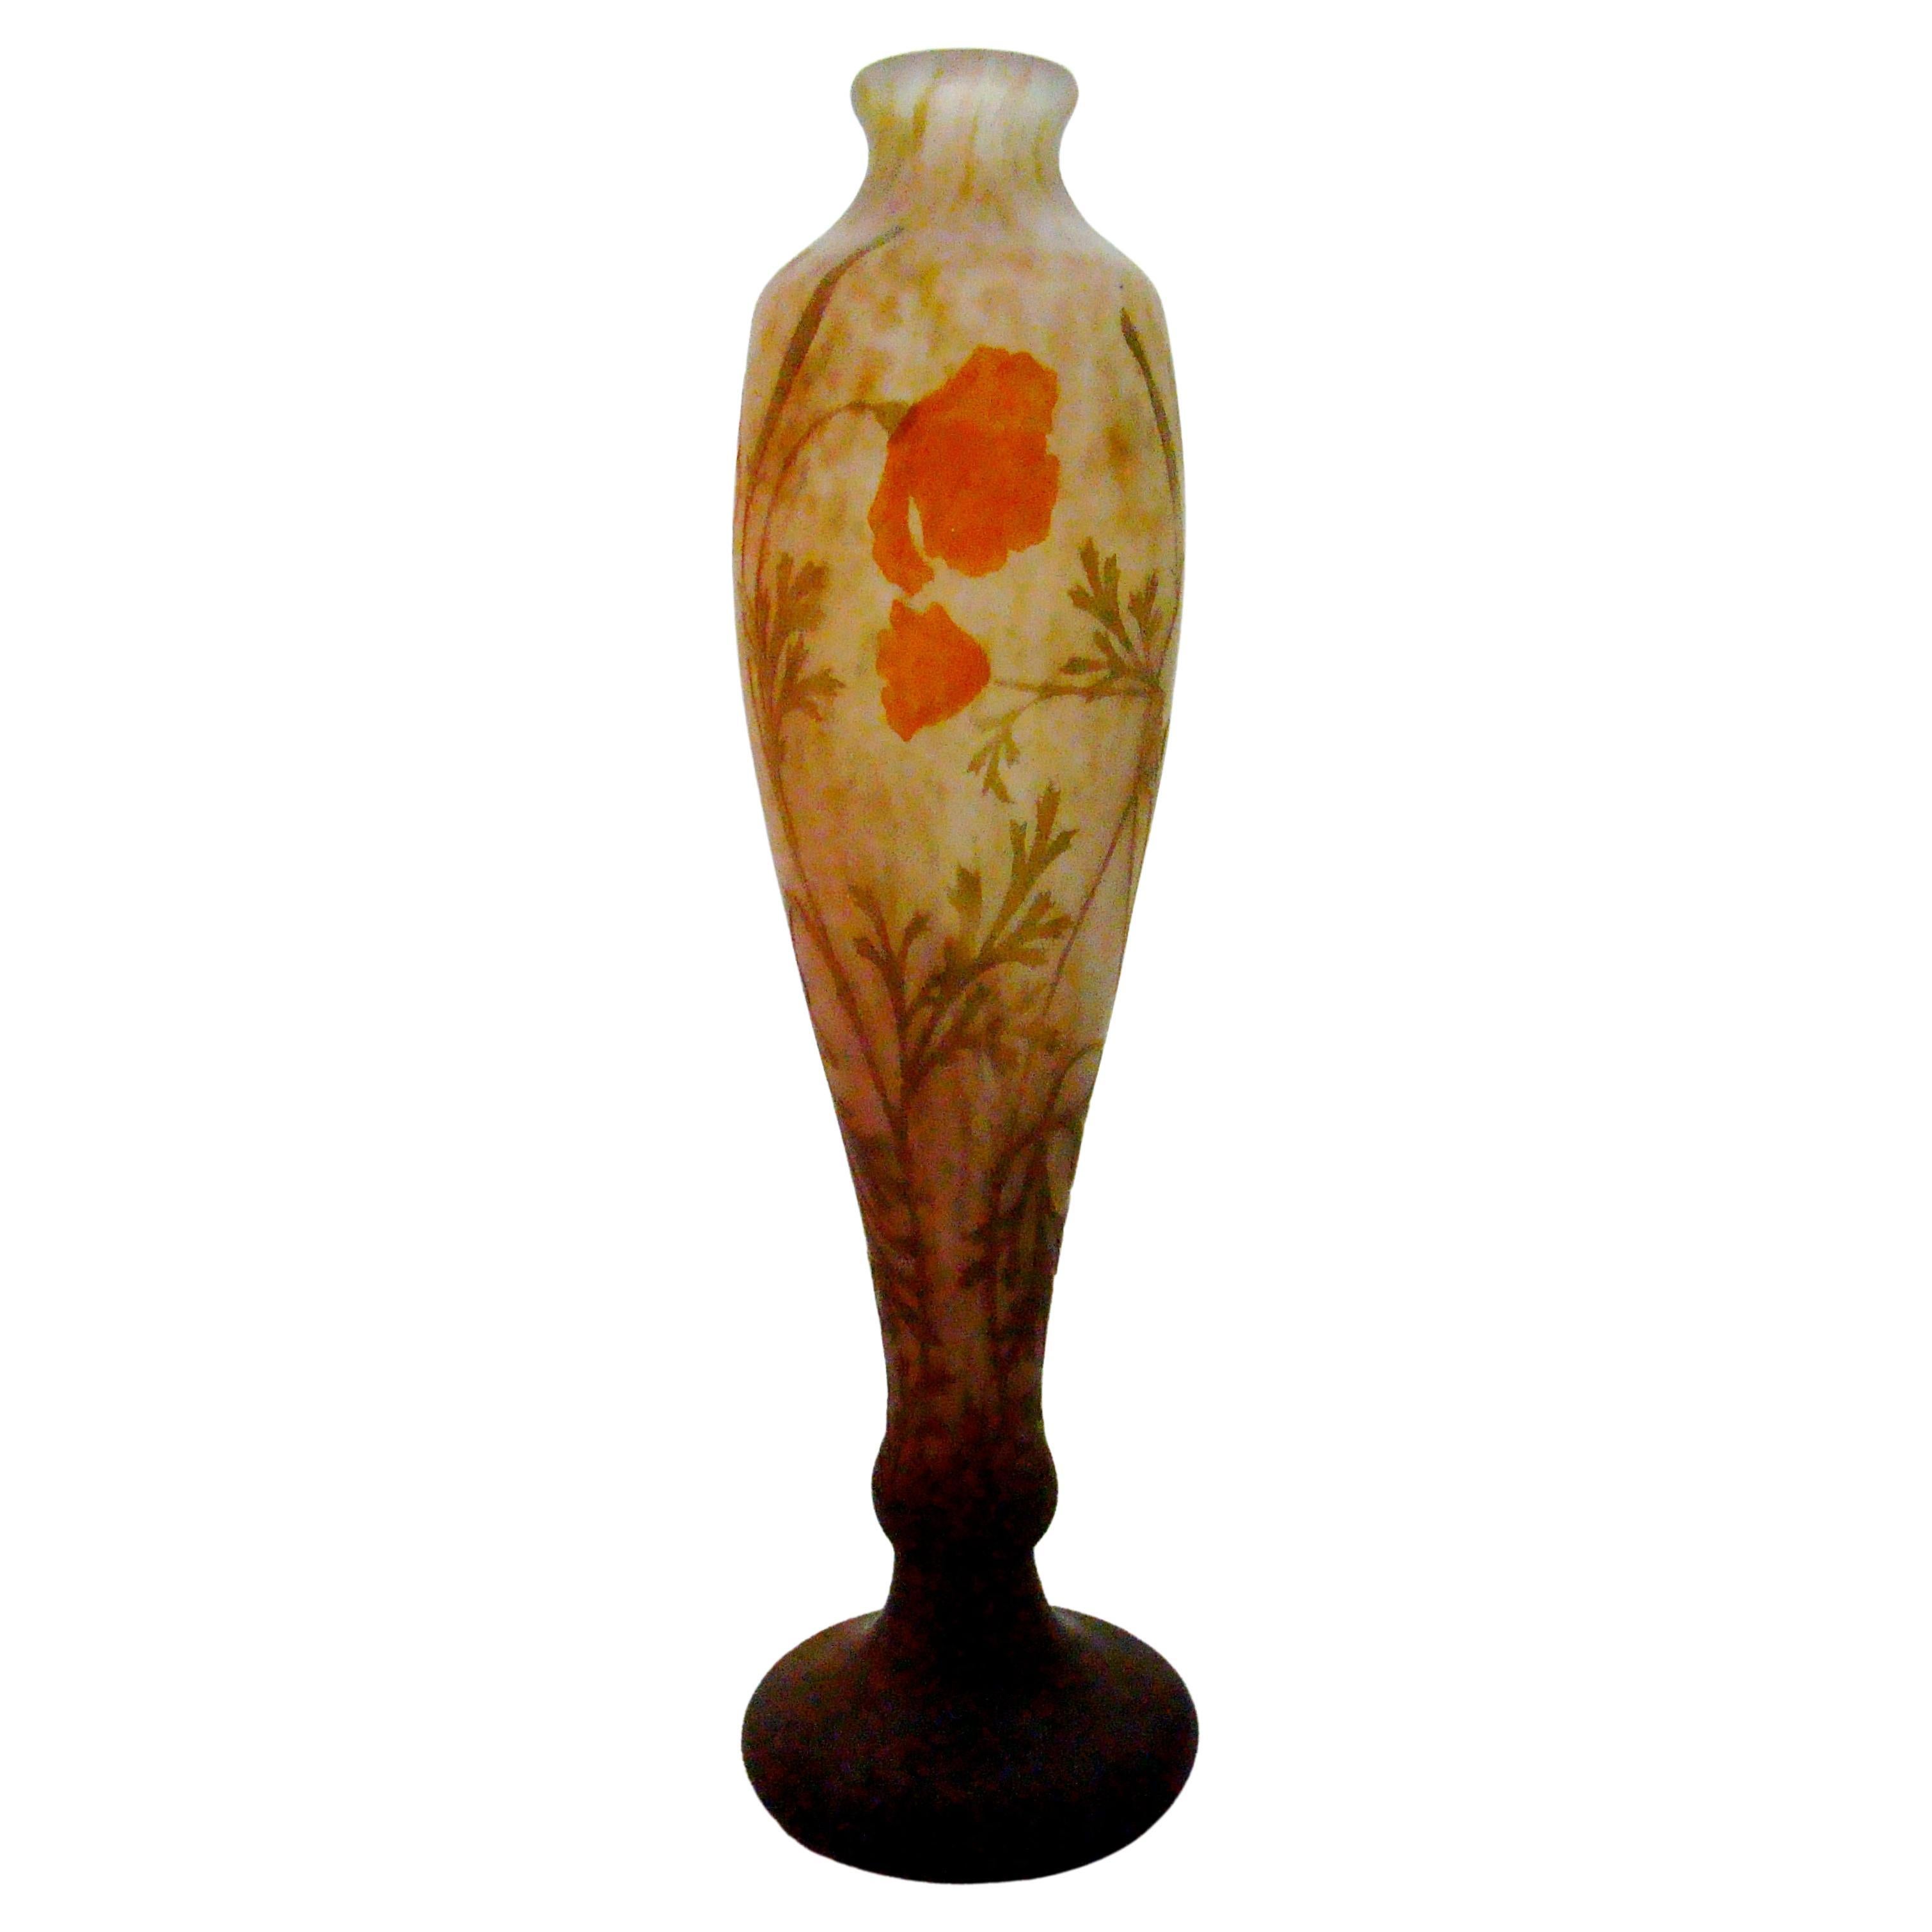 Vase, signiert: Daum Nancy, Frankreich, Stil: Jugendstil, Liberty, 1904